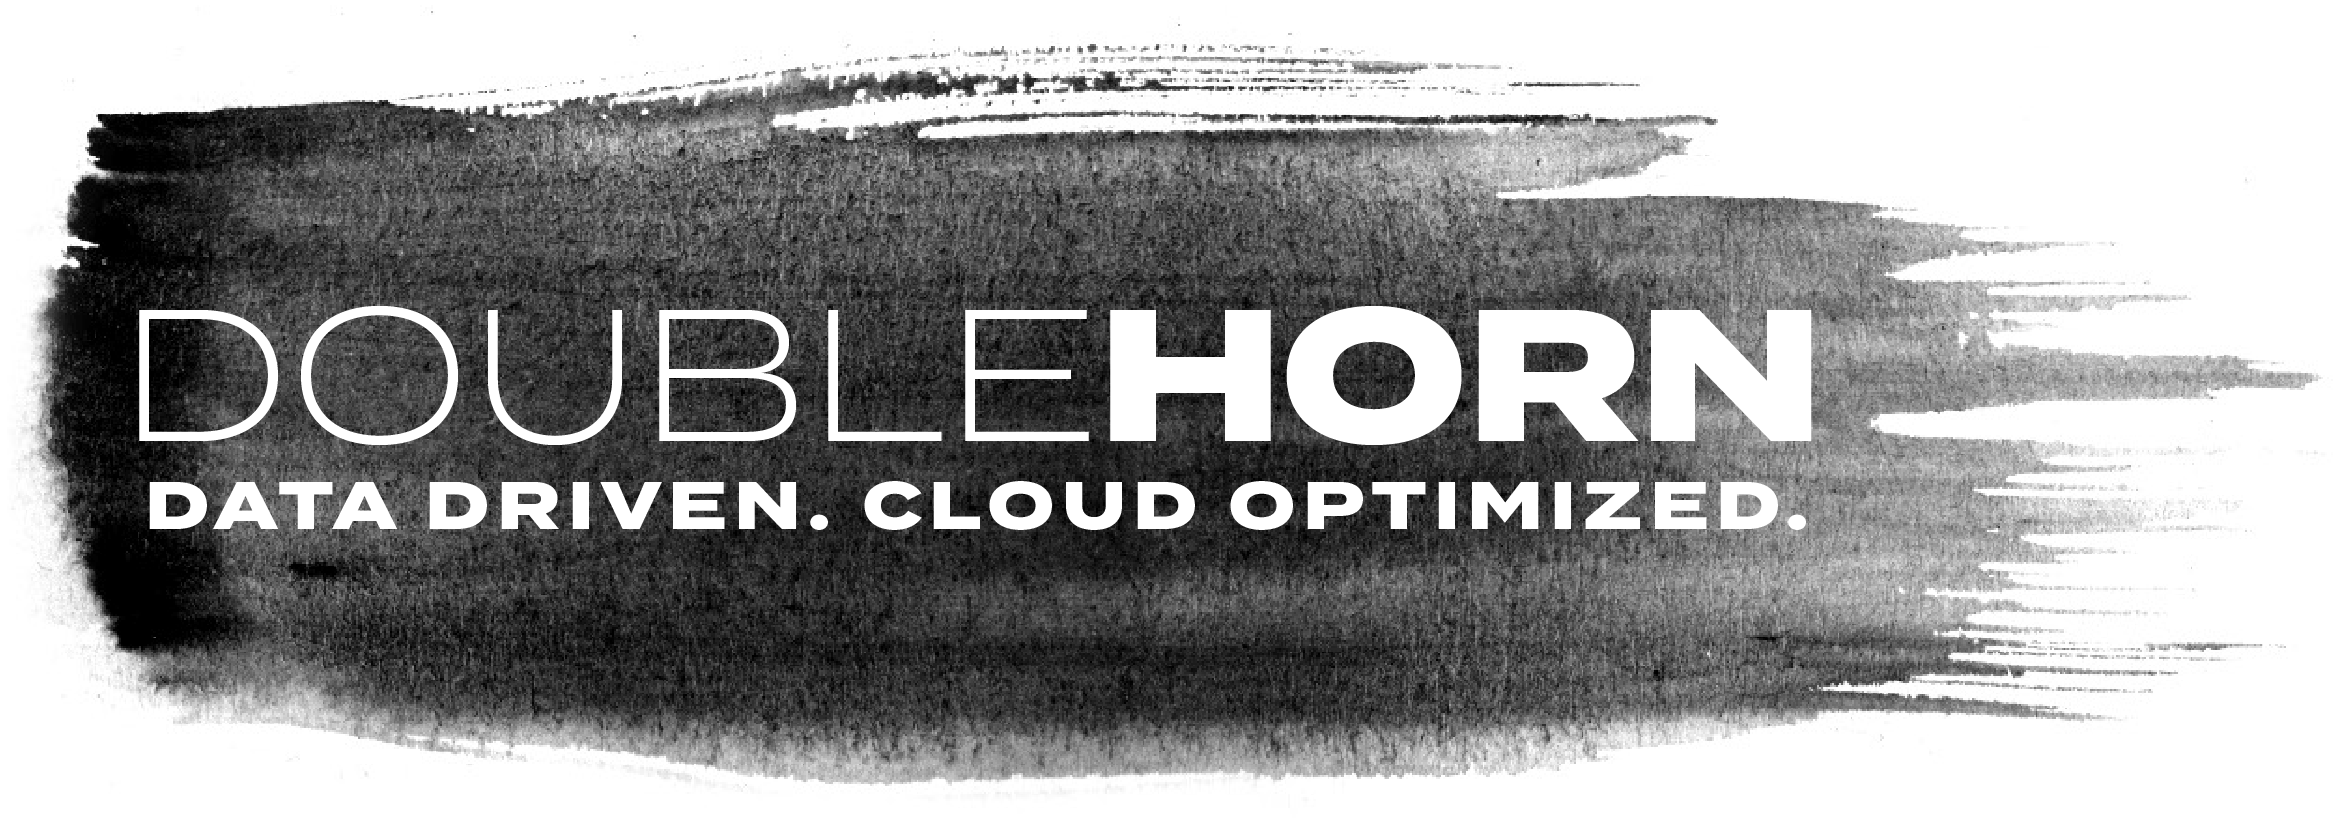 Data Driven Cloud Optimized - Monochrome Clipart (2803x1121), Png Download